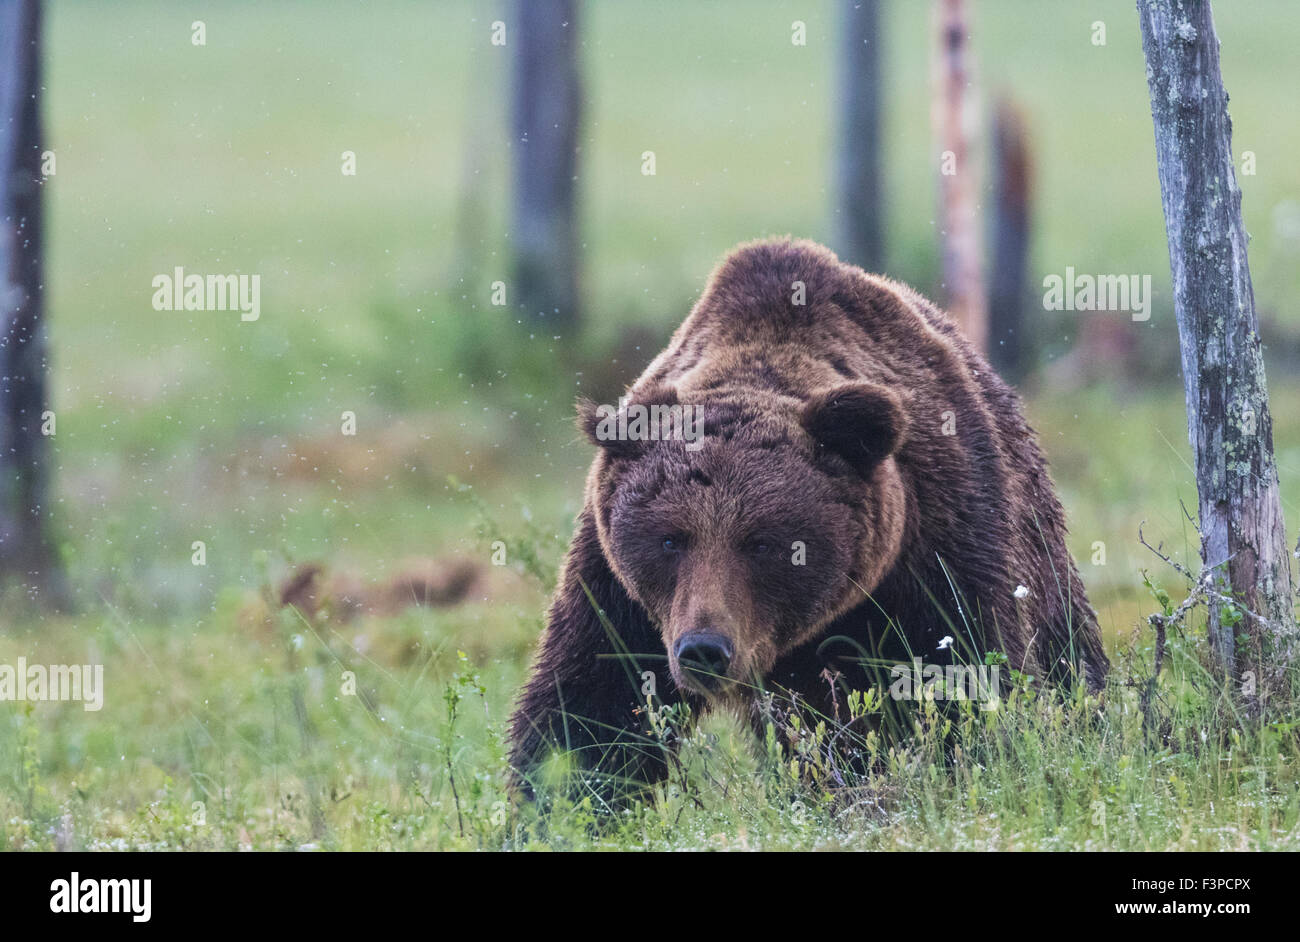 Ours brun, Ursus arctos, marchant sur une mousse vers l'appareil photo, baissant la tête et regarde droit vers l'avant, beaucoup de mosqui Banque D'Images